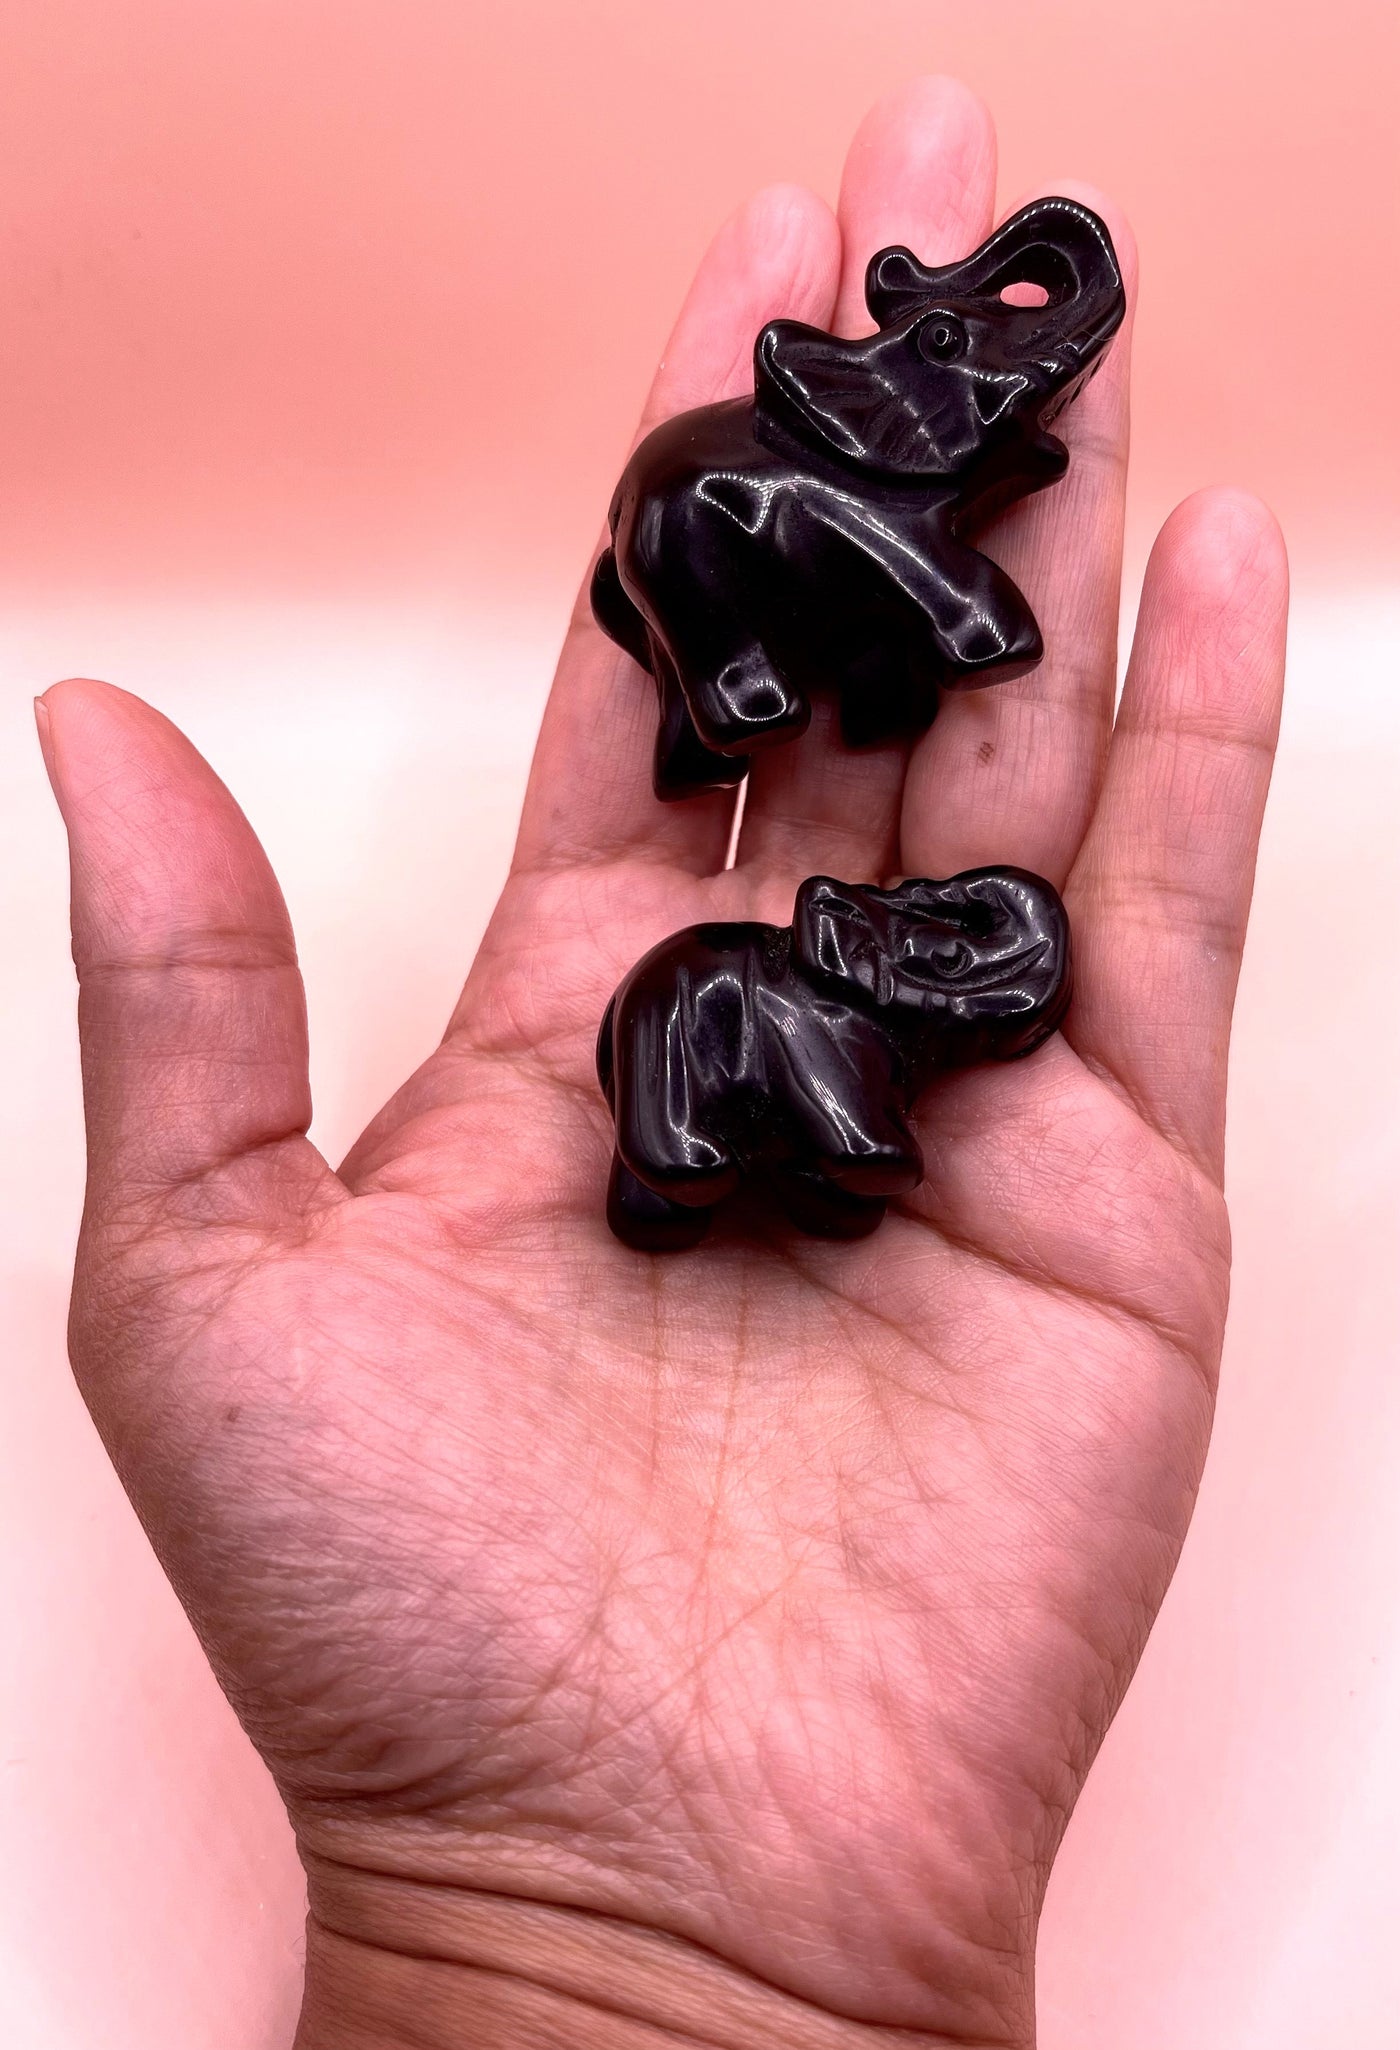 Black Obsidian Baby Elephants Reiki Energy Healing CrystalThe Spiritual Crystal Fairy